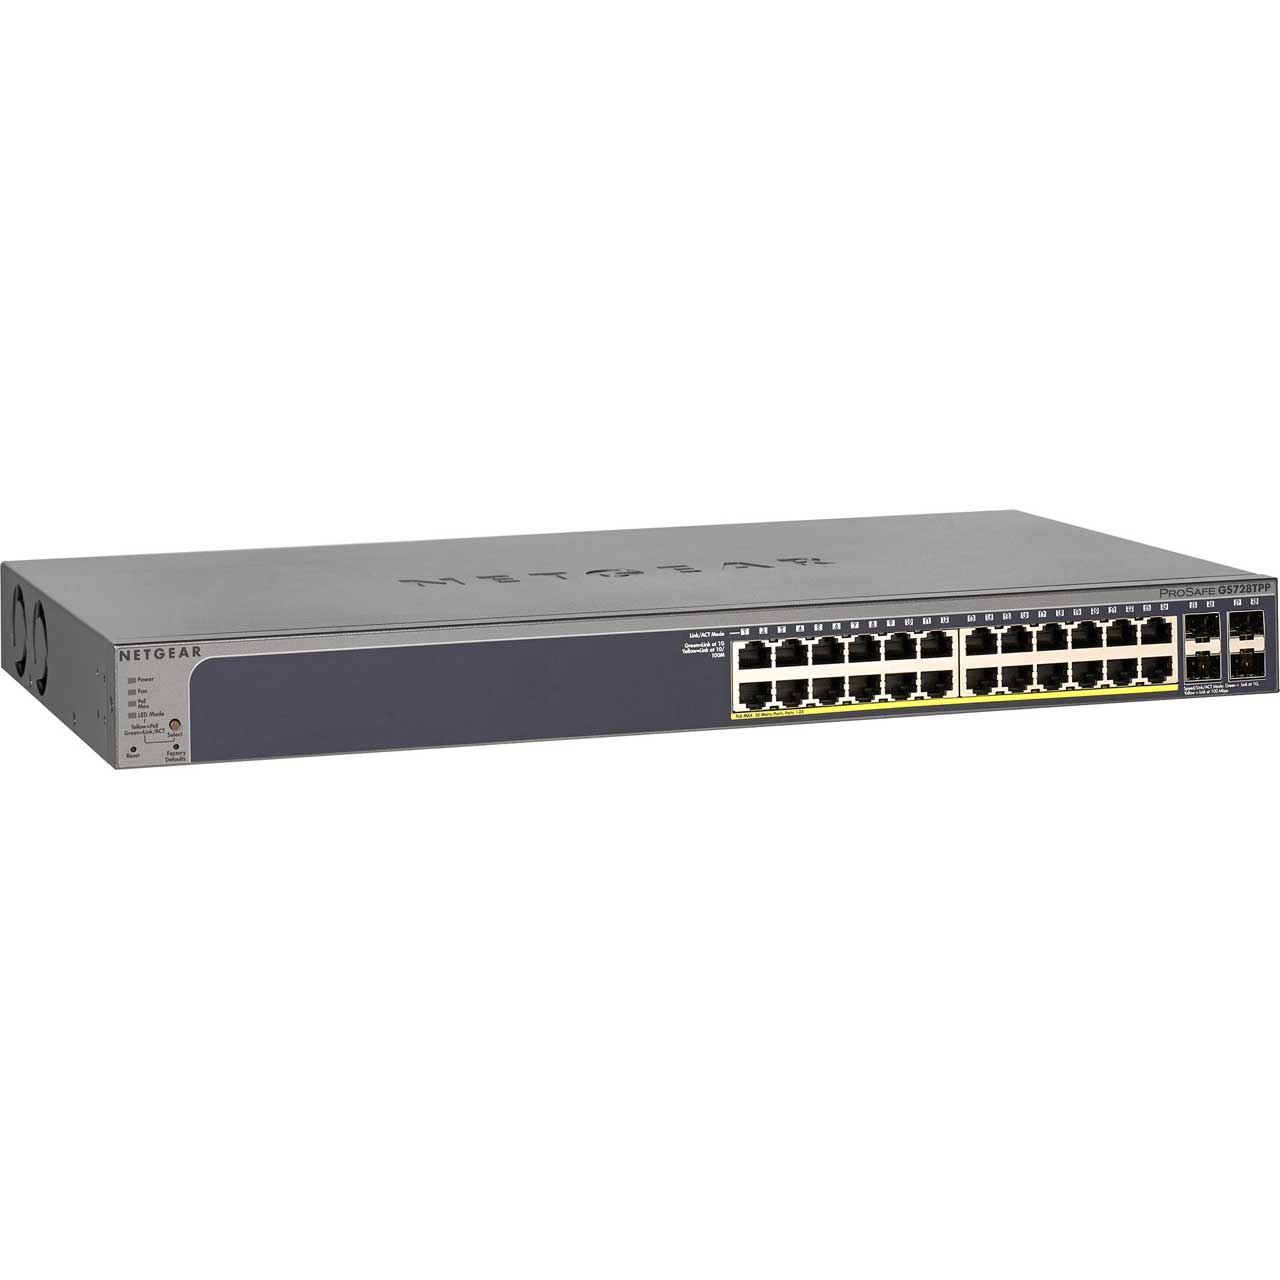 Netgear GS728TP-200NAS 24 Port GbE PoE - Smart Mngd Pro Switch 4 SFP 190W (GS728TPv2)  GS728TP-200NAS